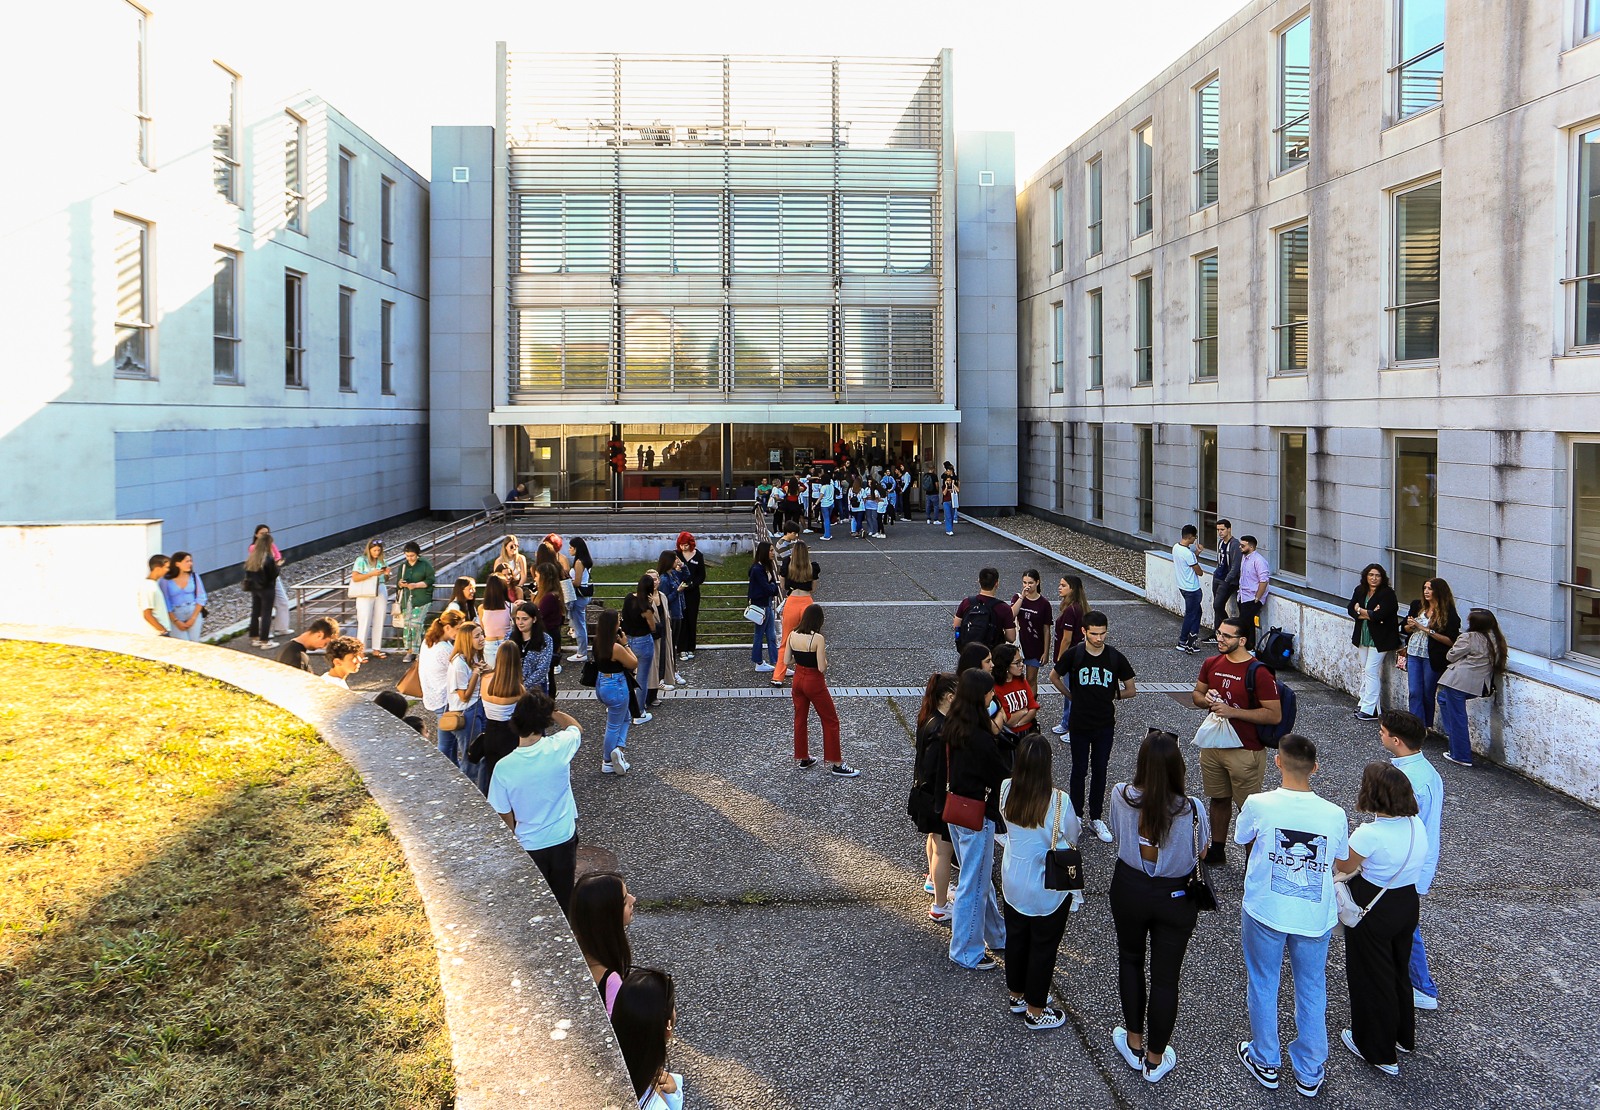 Campus de Gualtar, Braga (foto: Nuno Gonçalves)